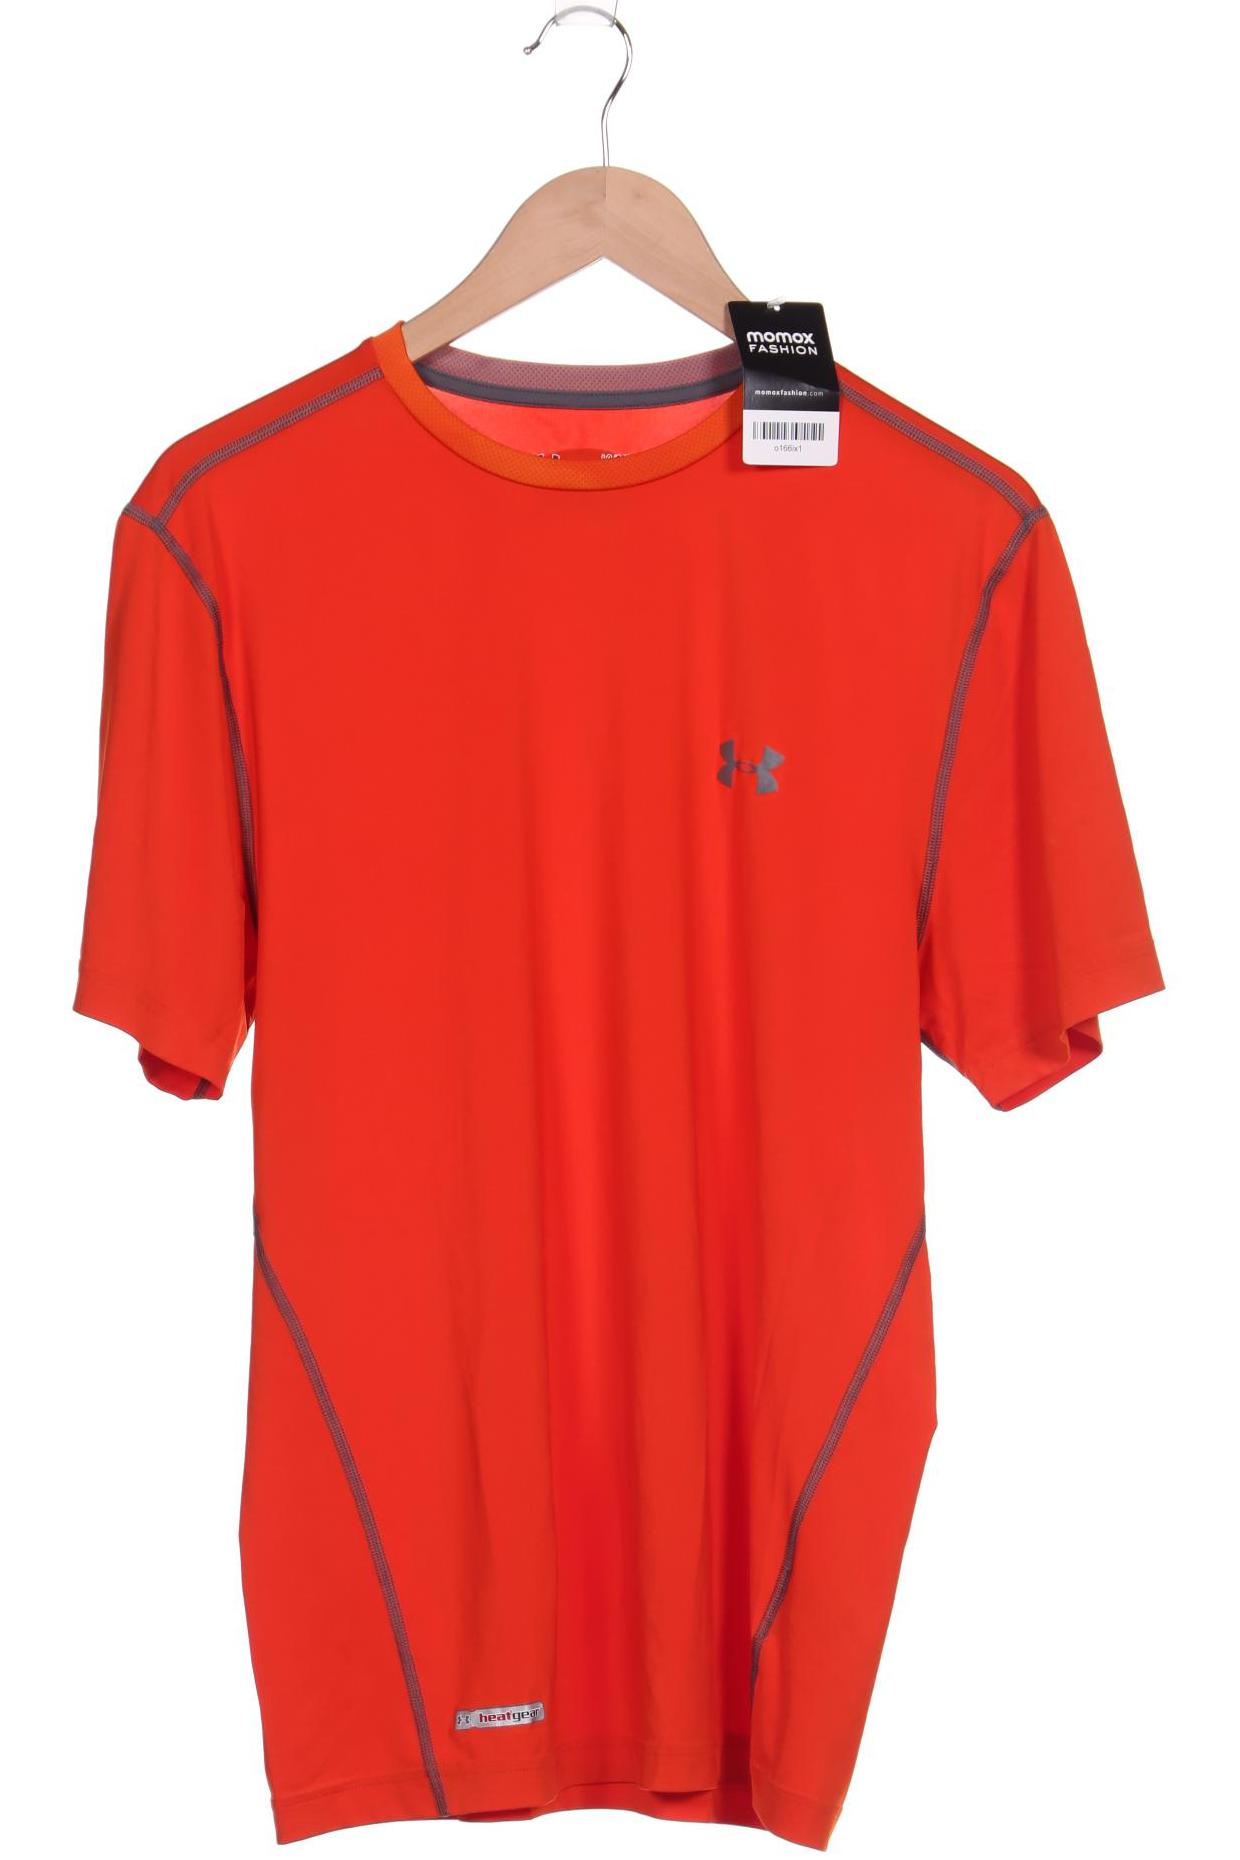 UNDER ARMOUR Herren T-Shirt, orange von Under Armour